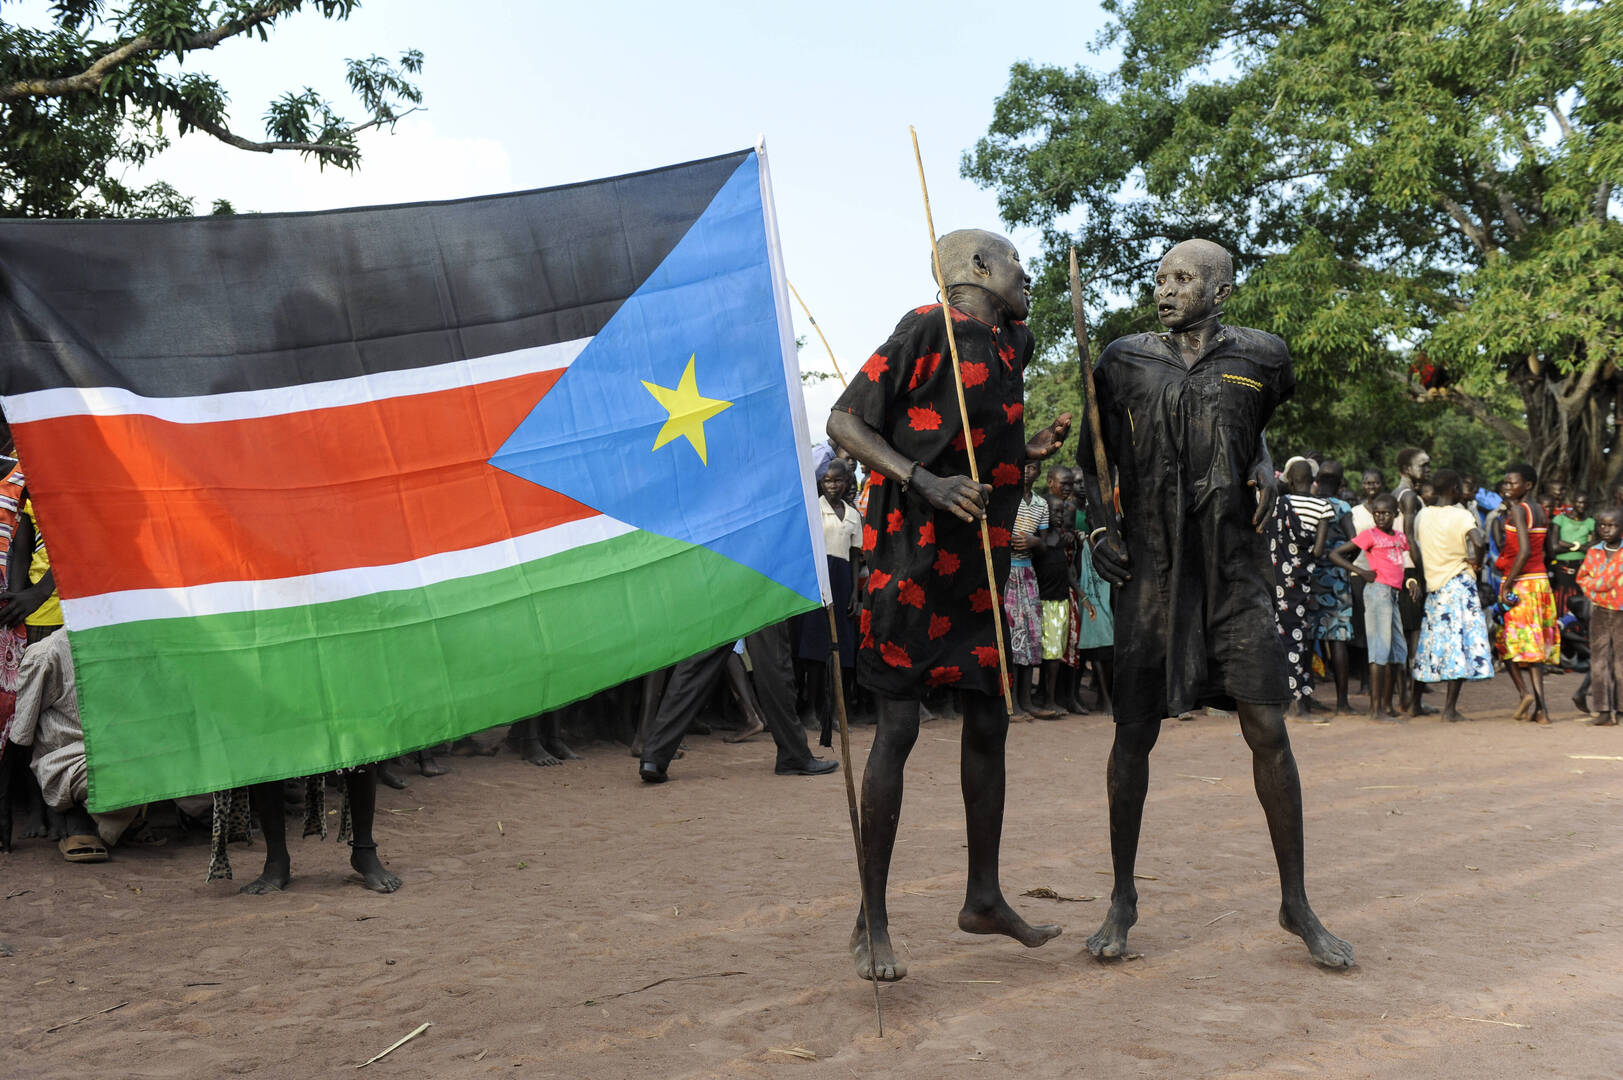 جنوب السودان يستعد لأول انتخابات منذ الاستقلال